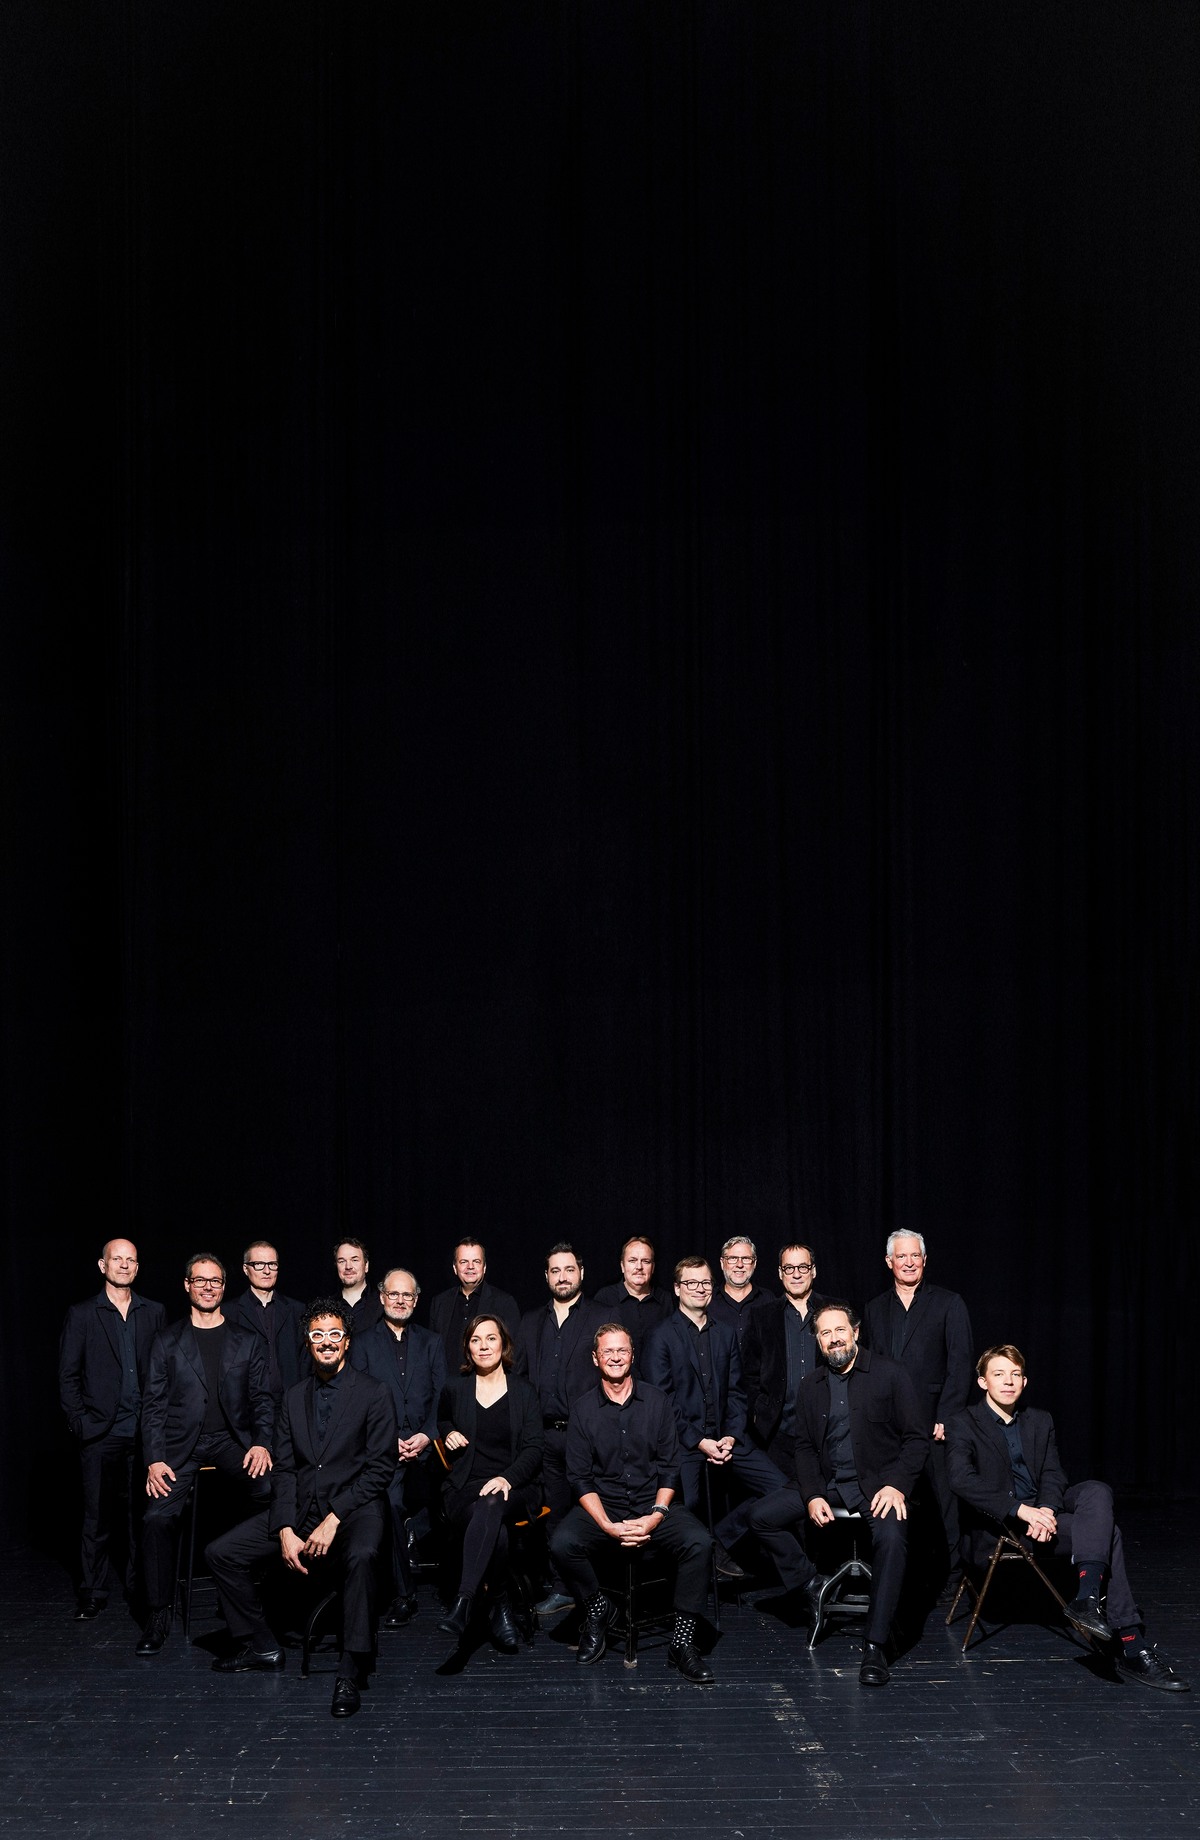 Bandmitglieder in dunkelblauer Kleidung vor dunklem Hintergrund sitzend 